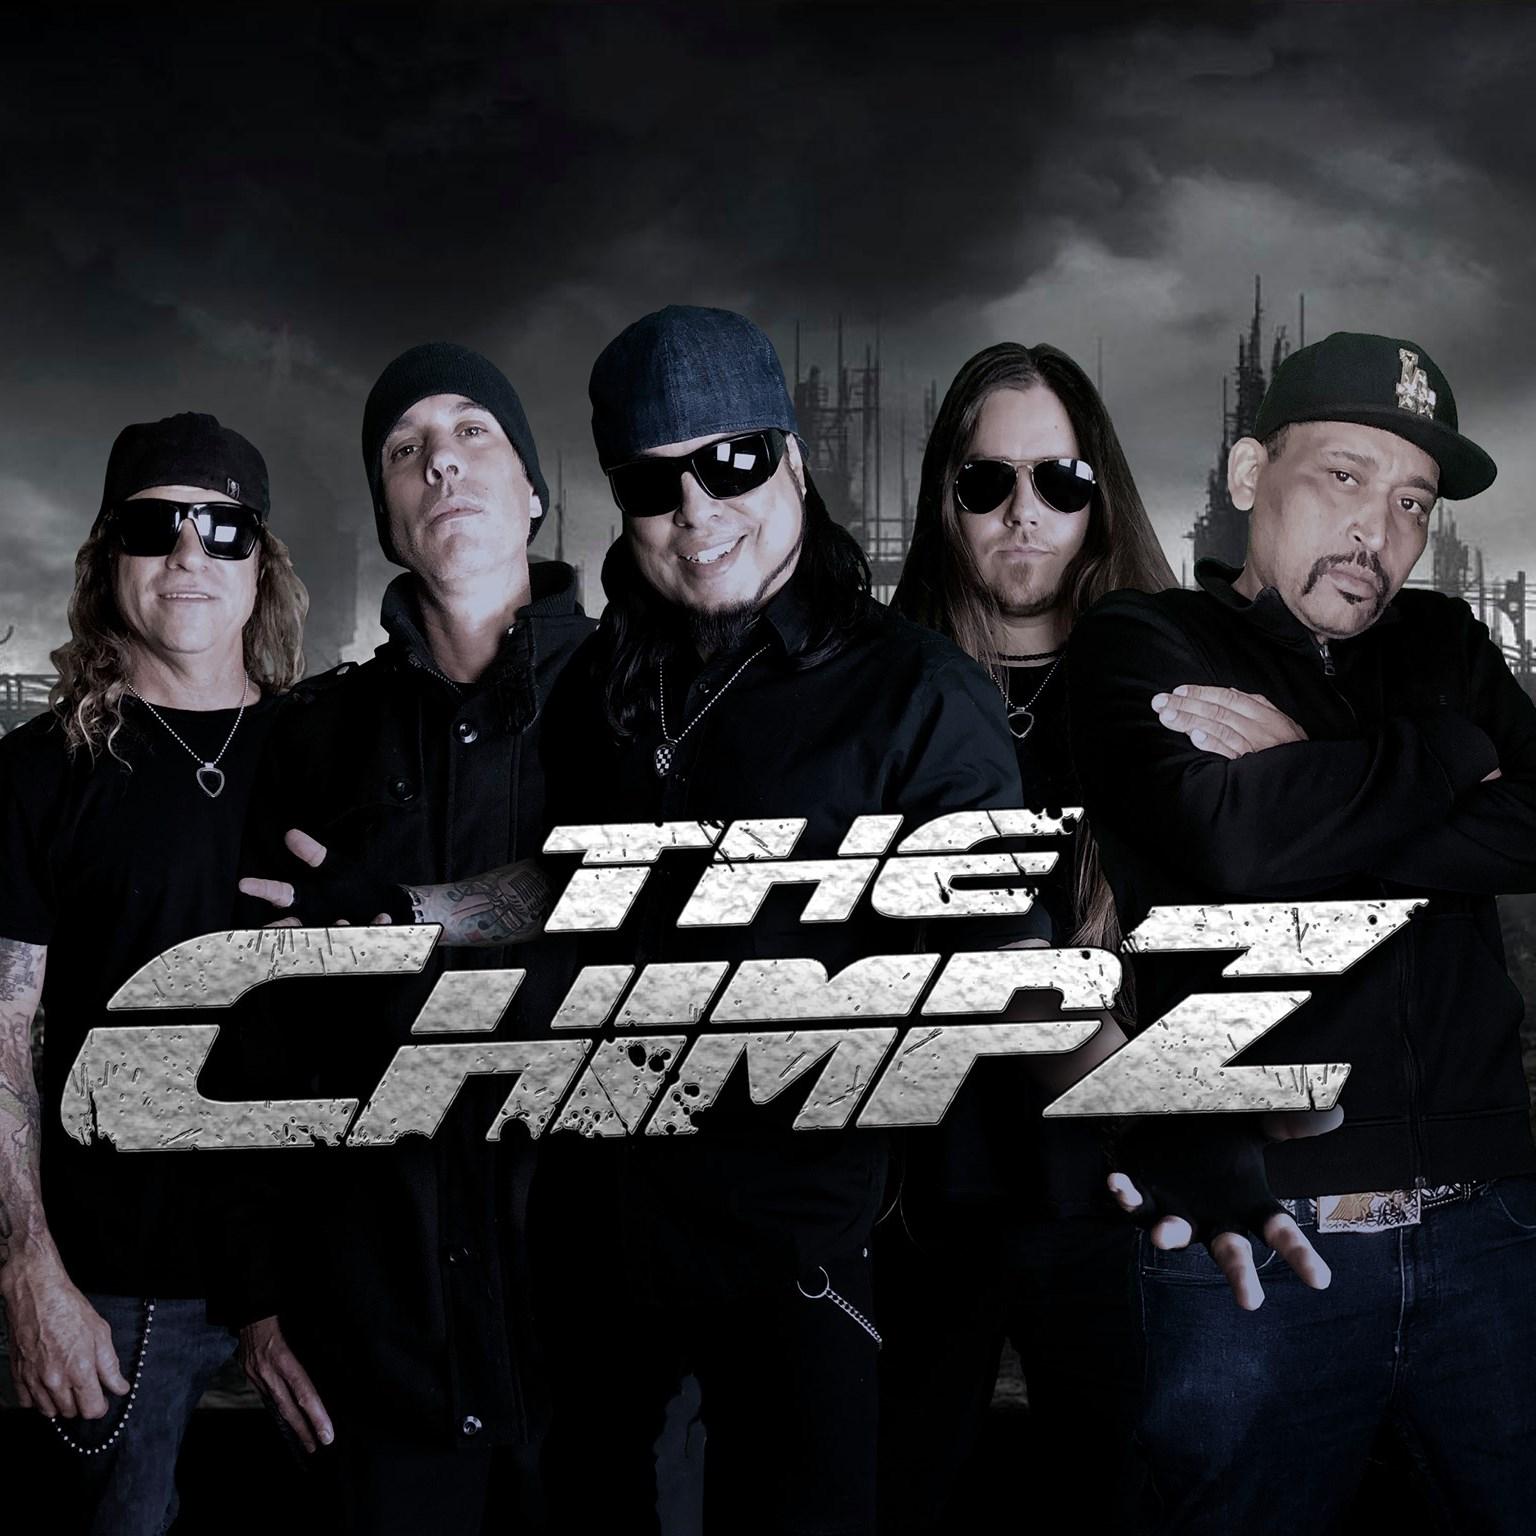 The Chimpz